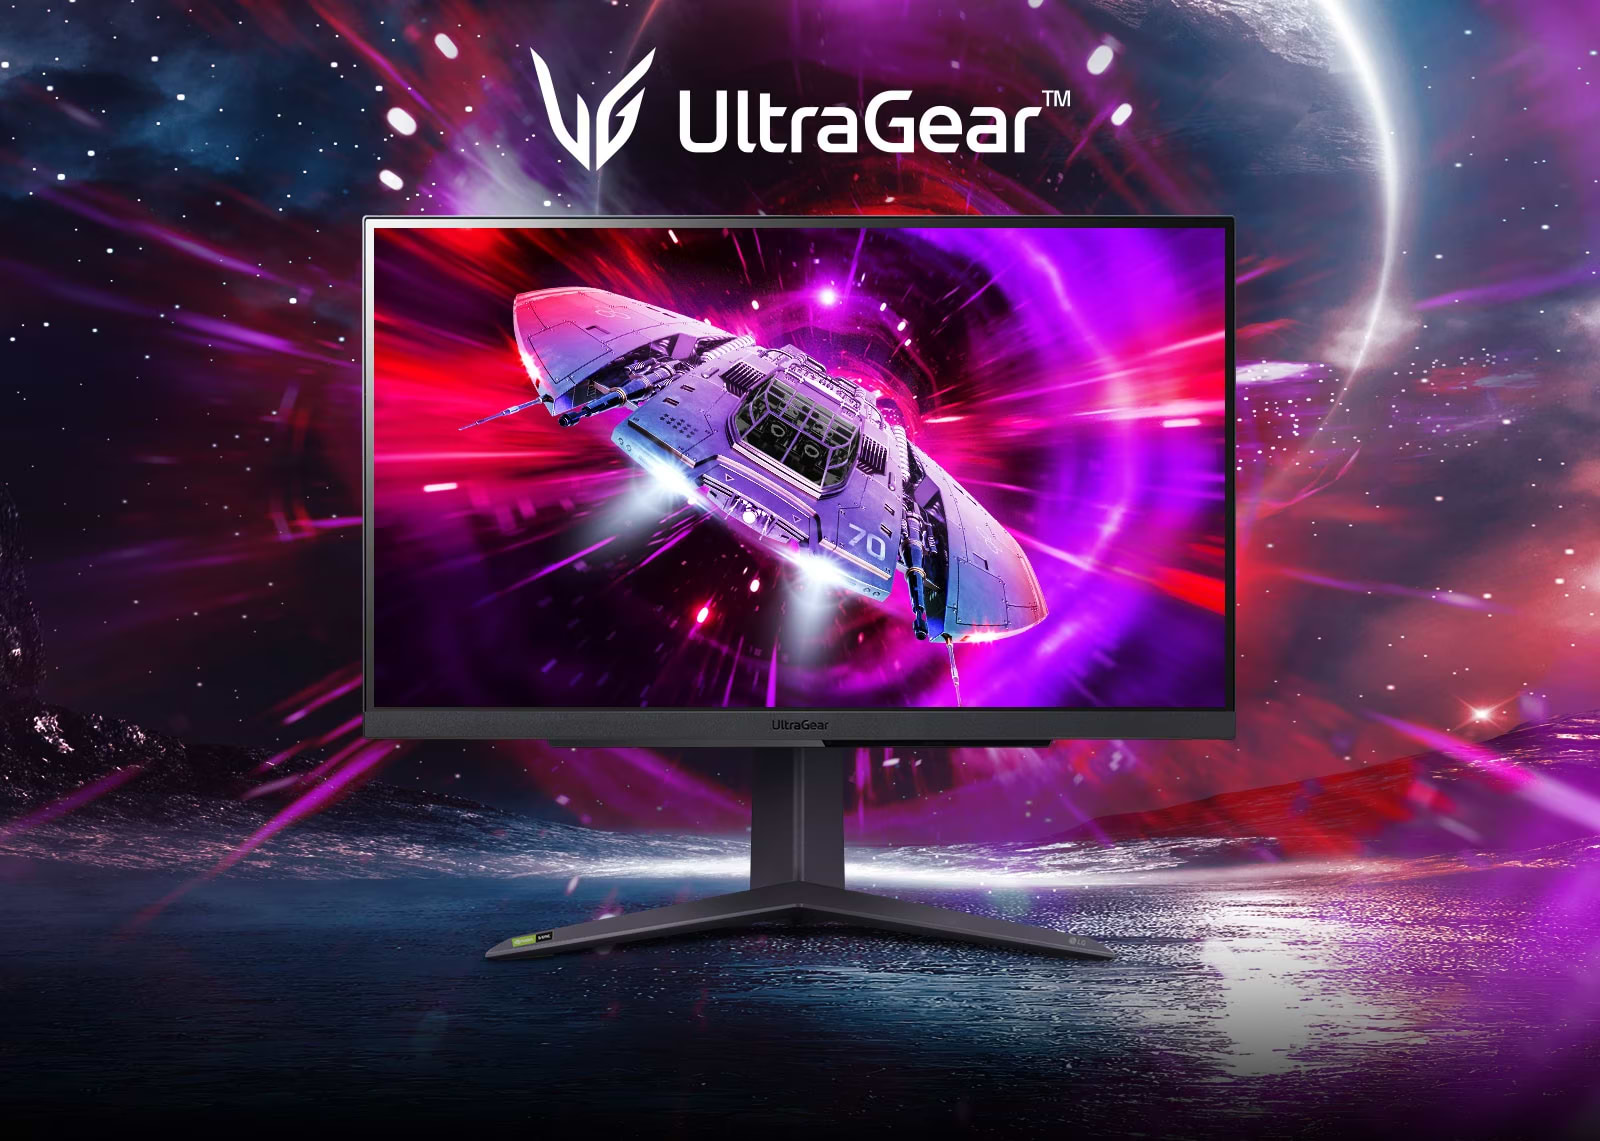 מסך מחשב גיימינג 27'' LG UltraGear 27GR75Q-B G-Sync IPS QHD HDR10 1ms 165Hz - צבע שחור שלוש שנות אחריות ע"י היבואן הרשמי